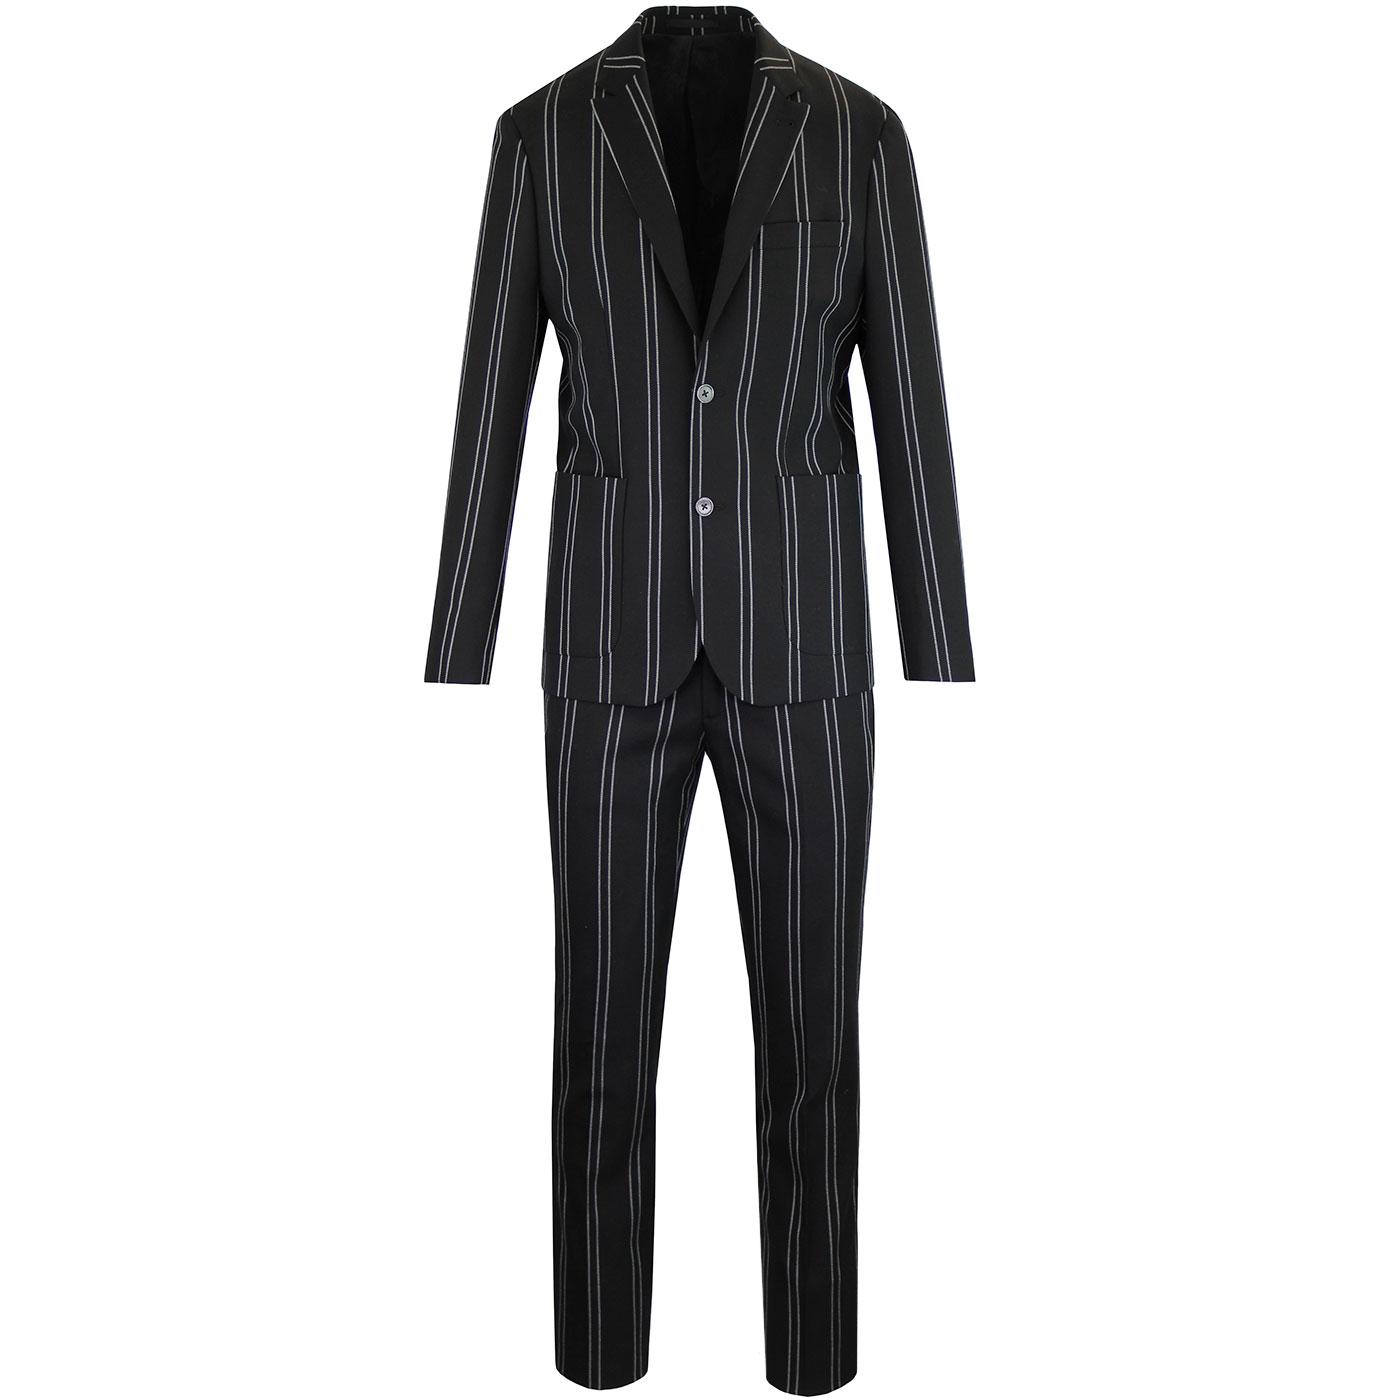 PRETTY GREEN Black Label Pin Stripe Mod Suit